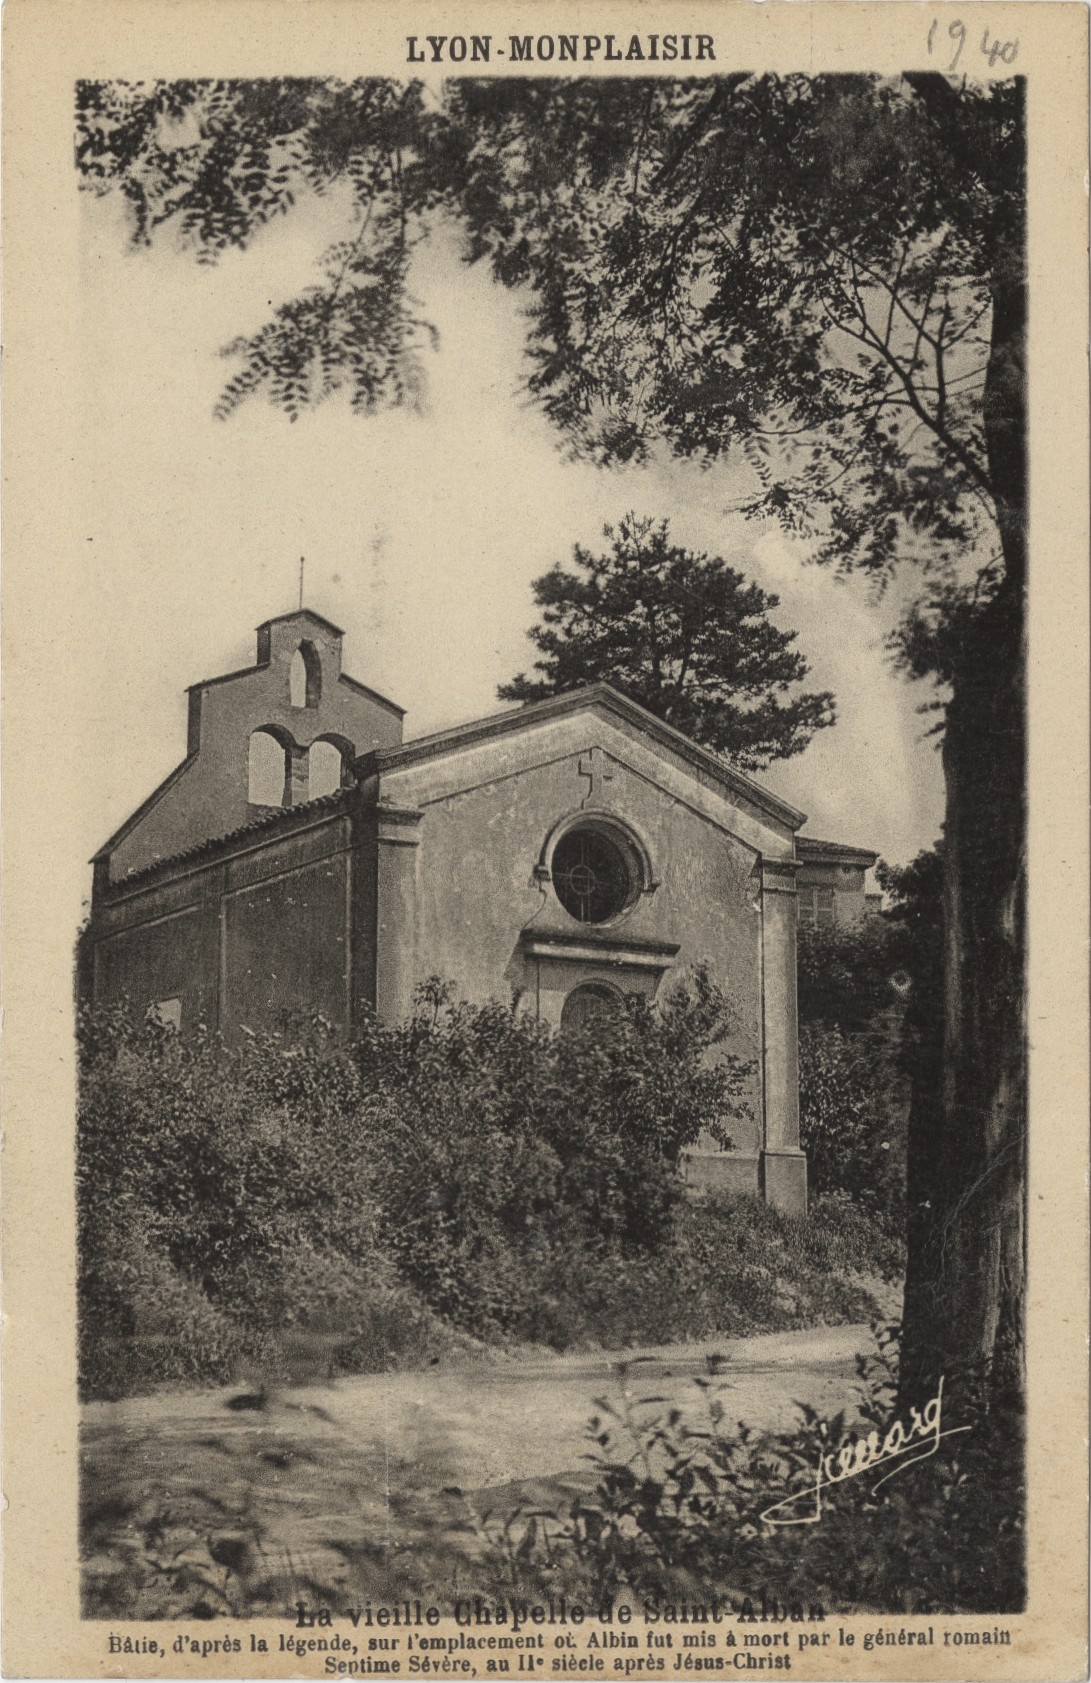 Lyon-Monplaisir - La vieille chapelle de Saint-Alban, détruite, située vers l'actuelle rue Saint-Alban : carte postale NB (vers 1910, cote : 4FI/321)